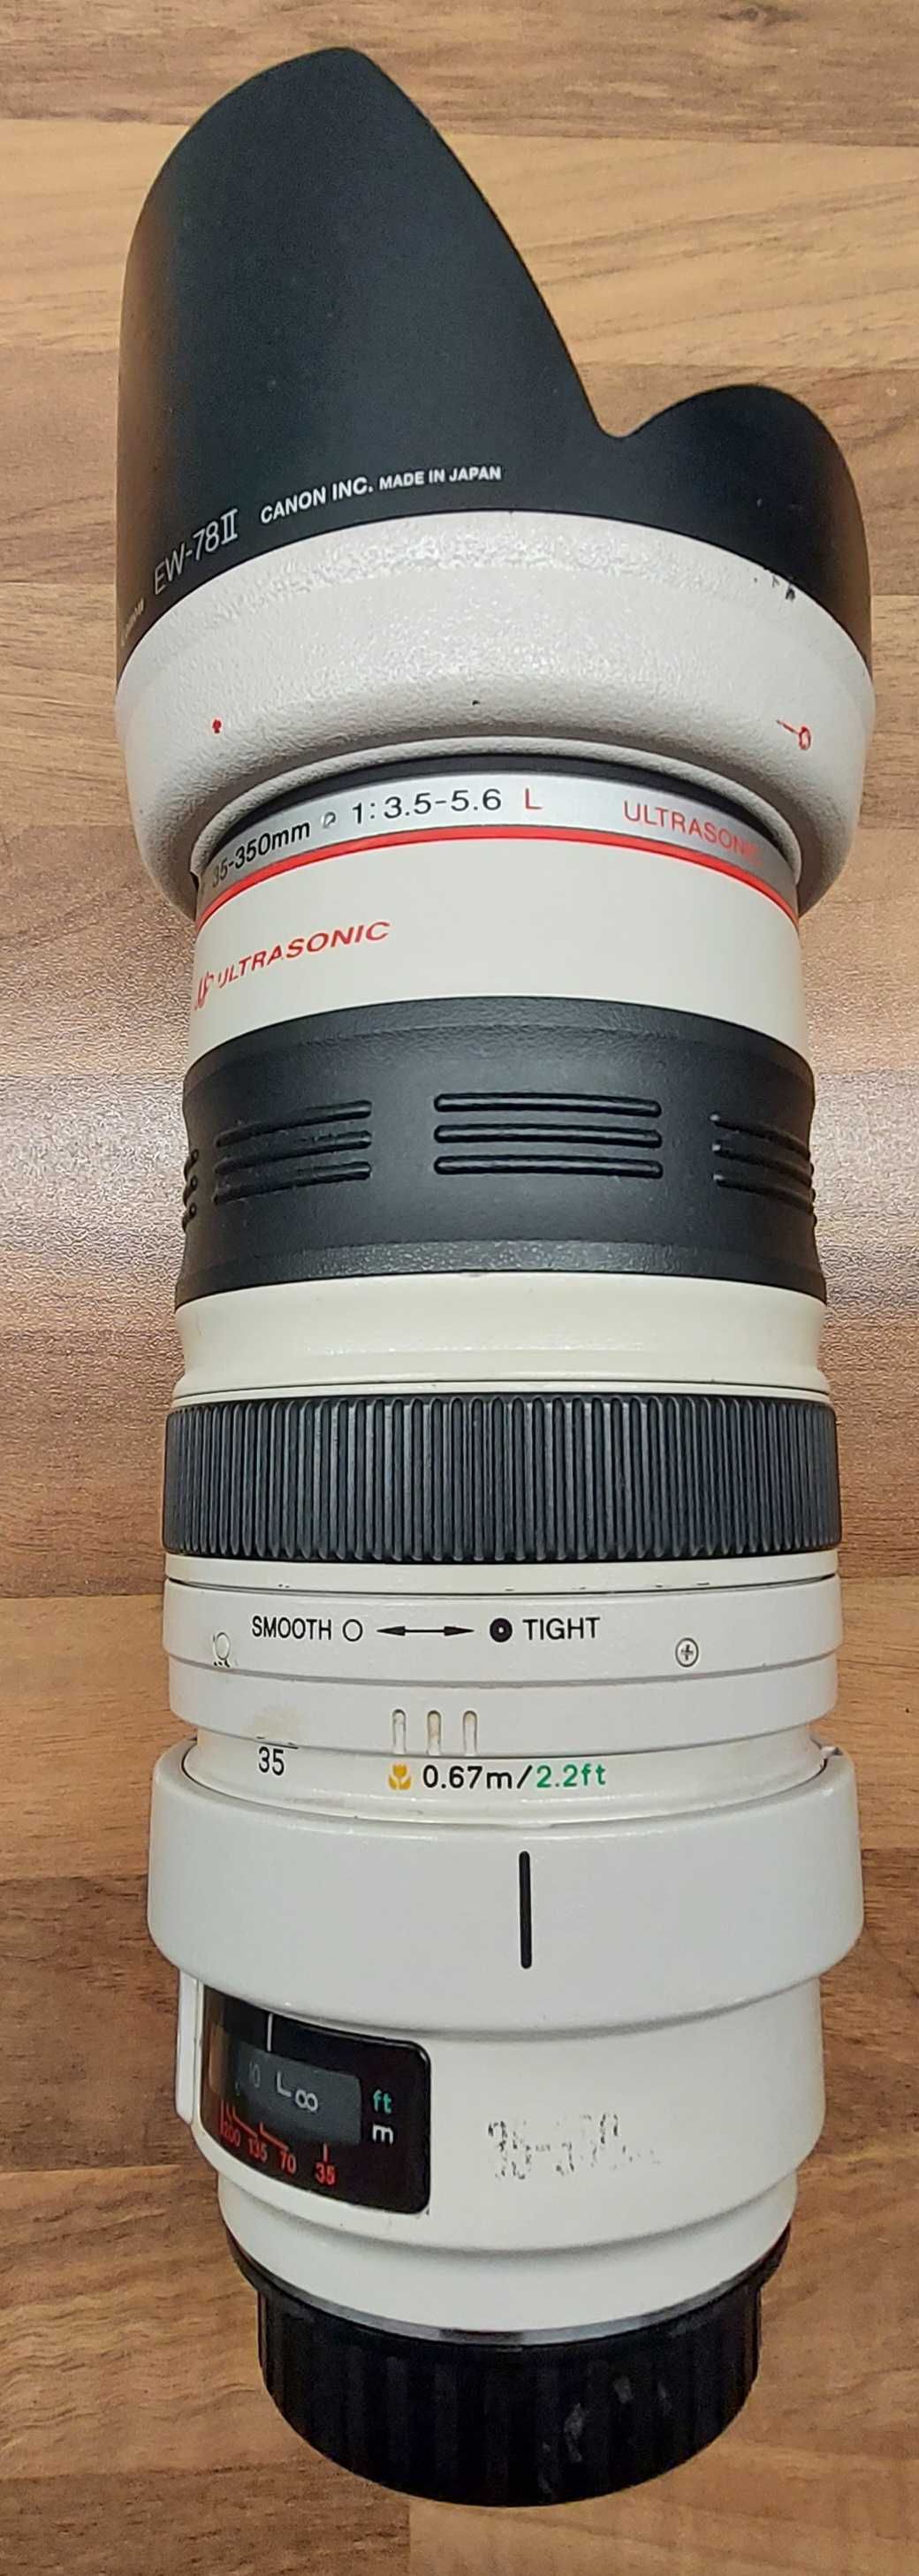 Canon 35-350 mm f 1:3.5-5.6 L